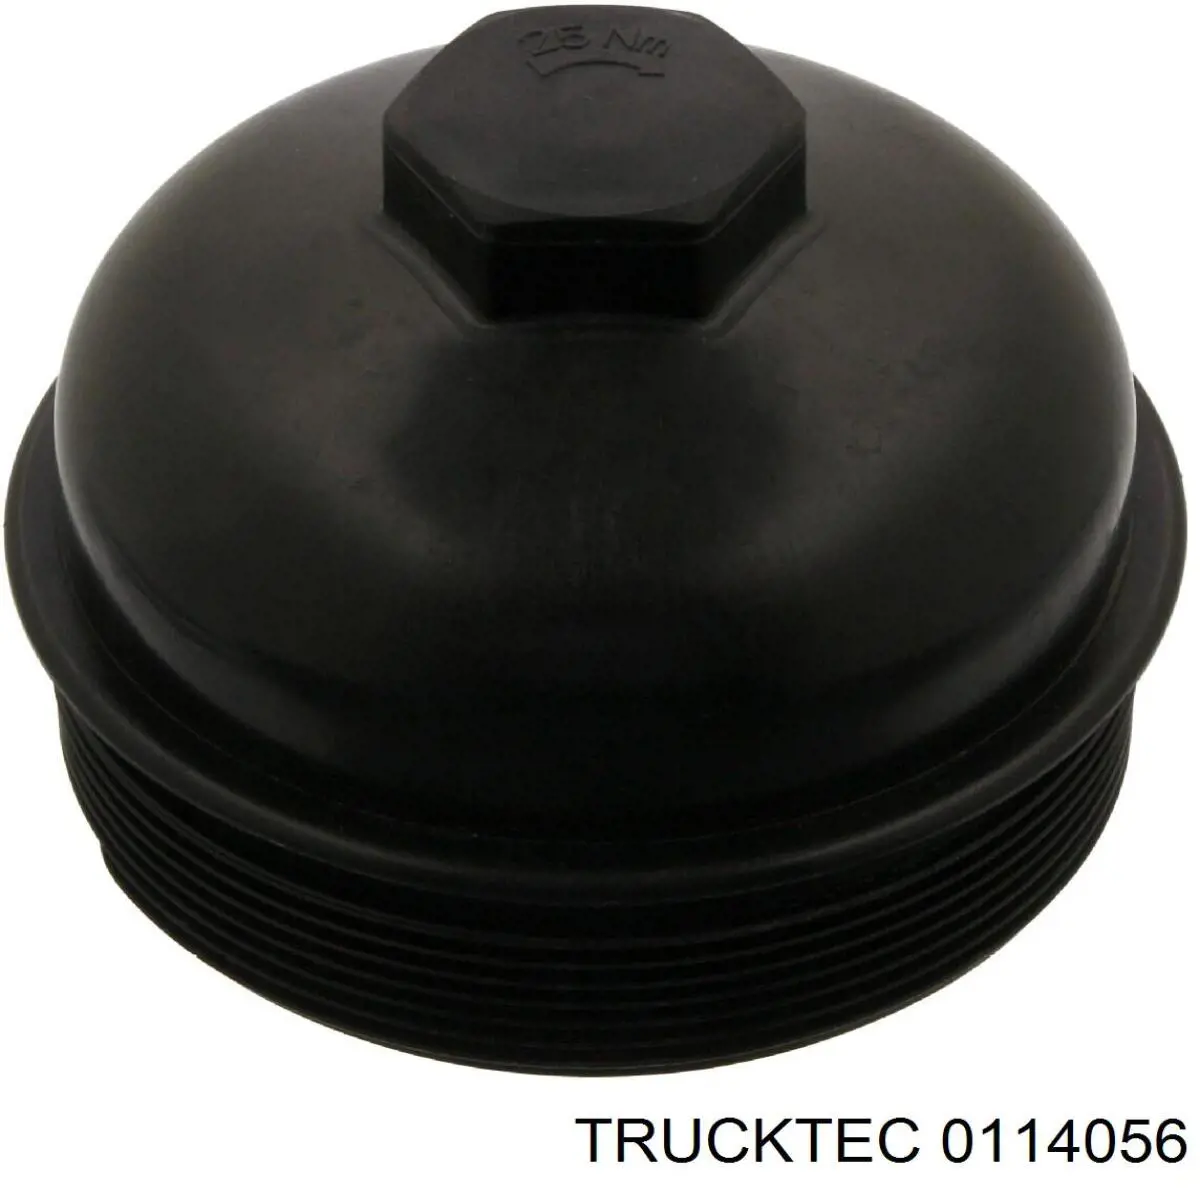 01.14.056 Trucktec tapa de la carcasa del filtro de el combustible